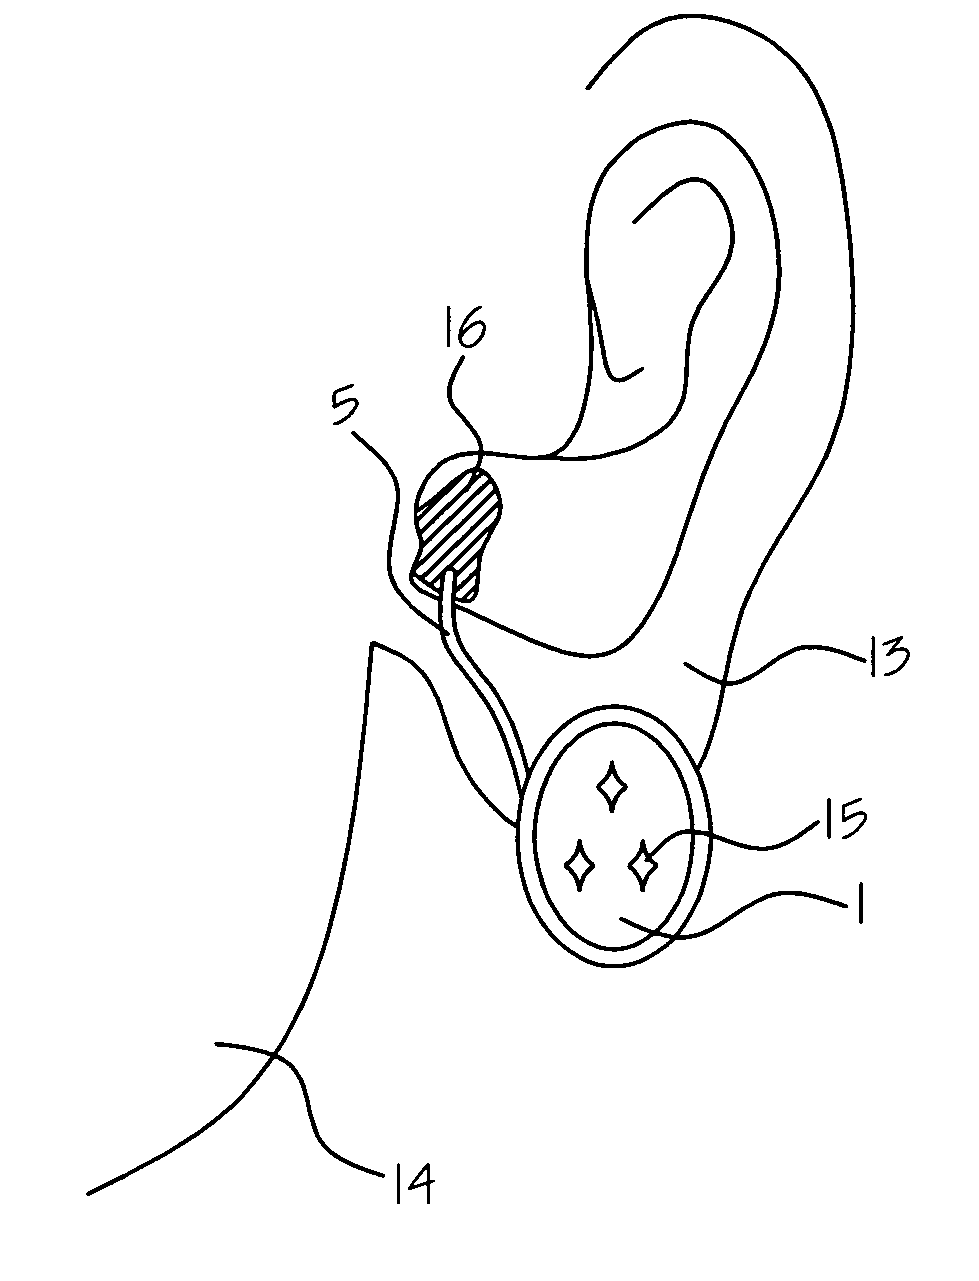 Ear ring type two way wireless mini-ear piece